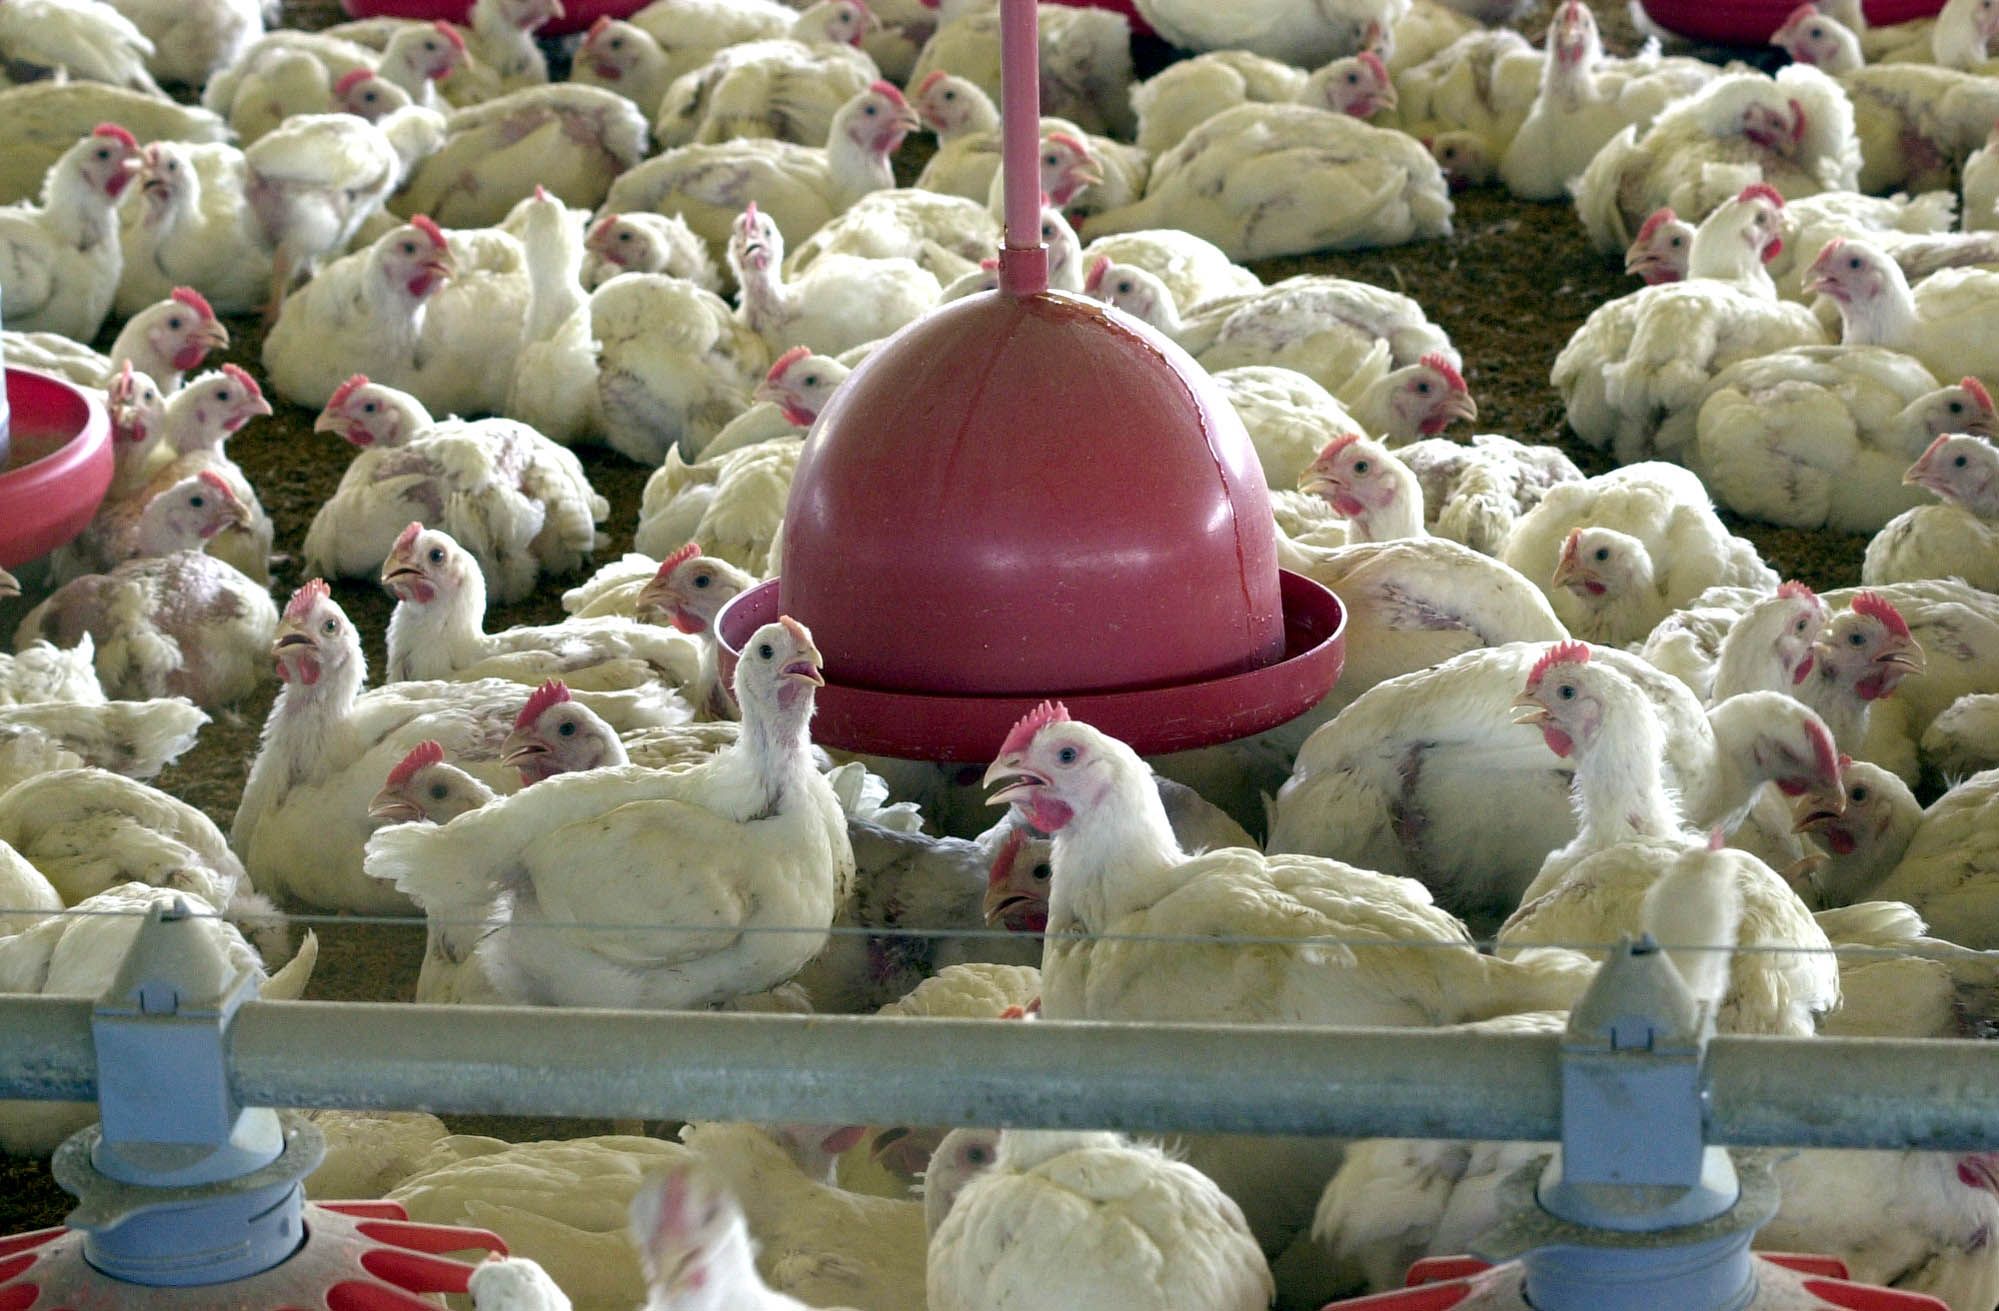 brasil registra recorde no abate de frangos em 2021